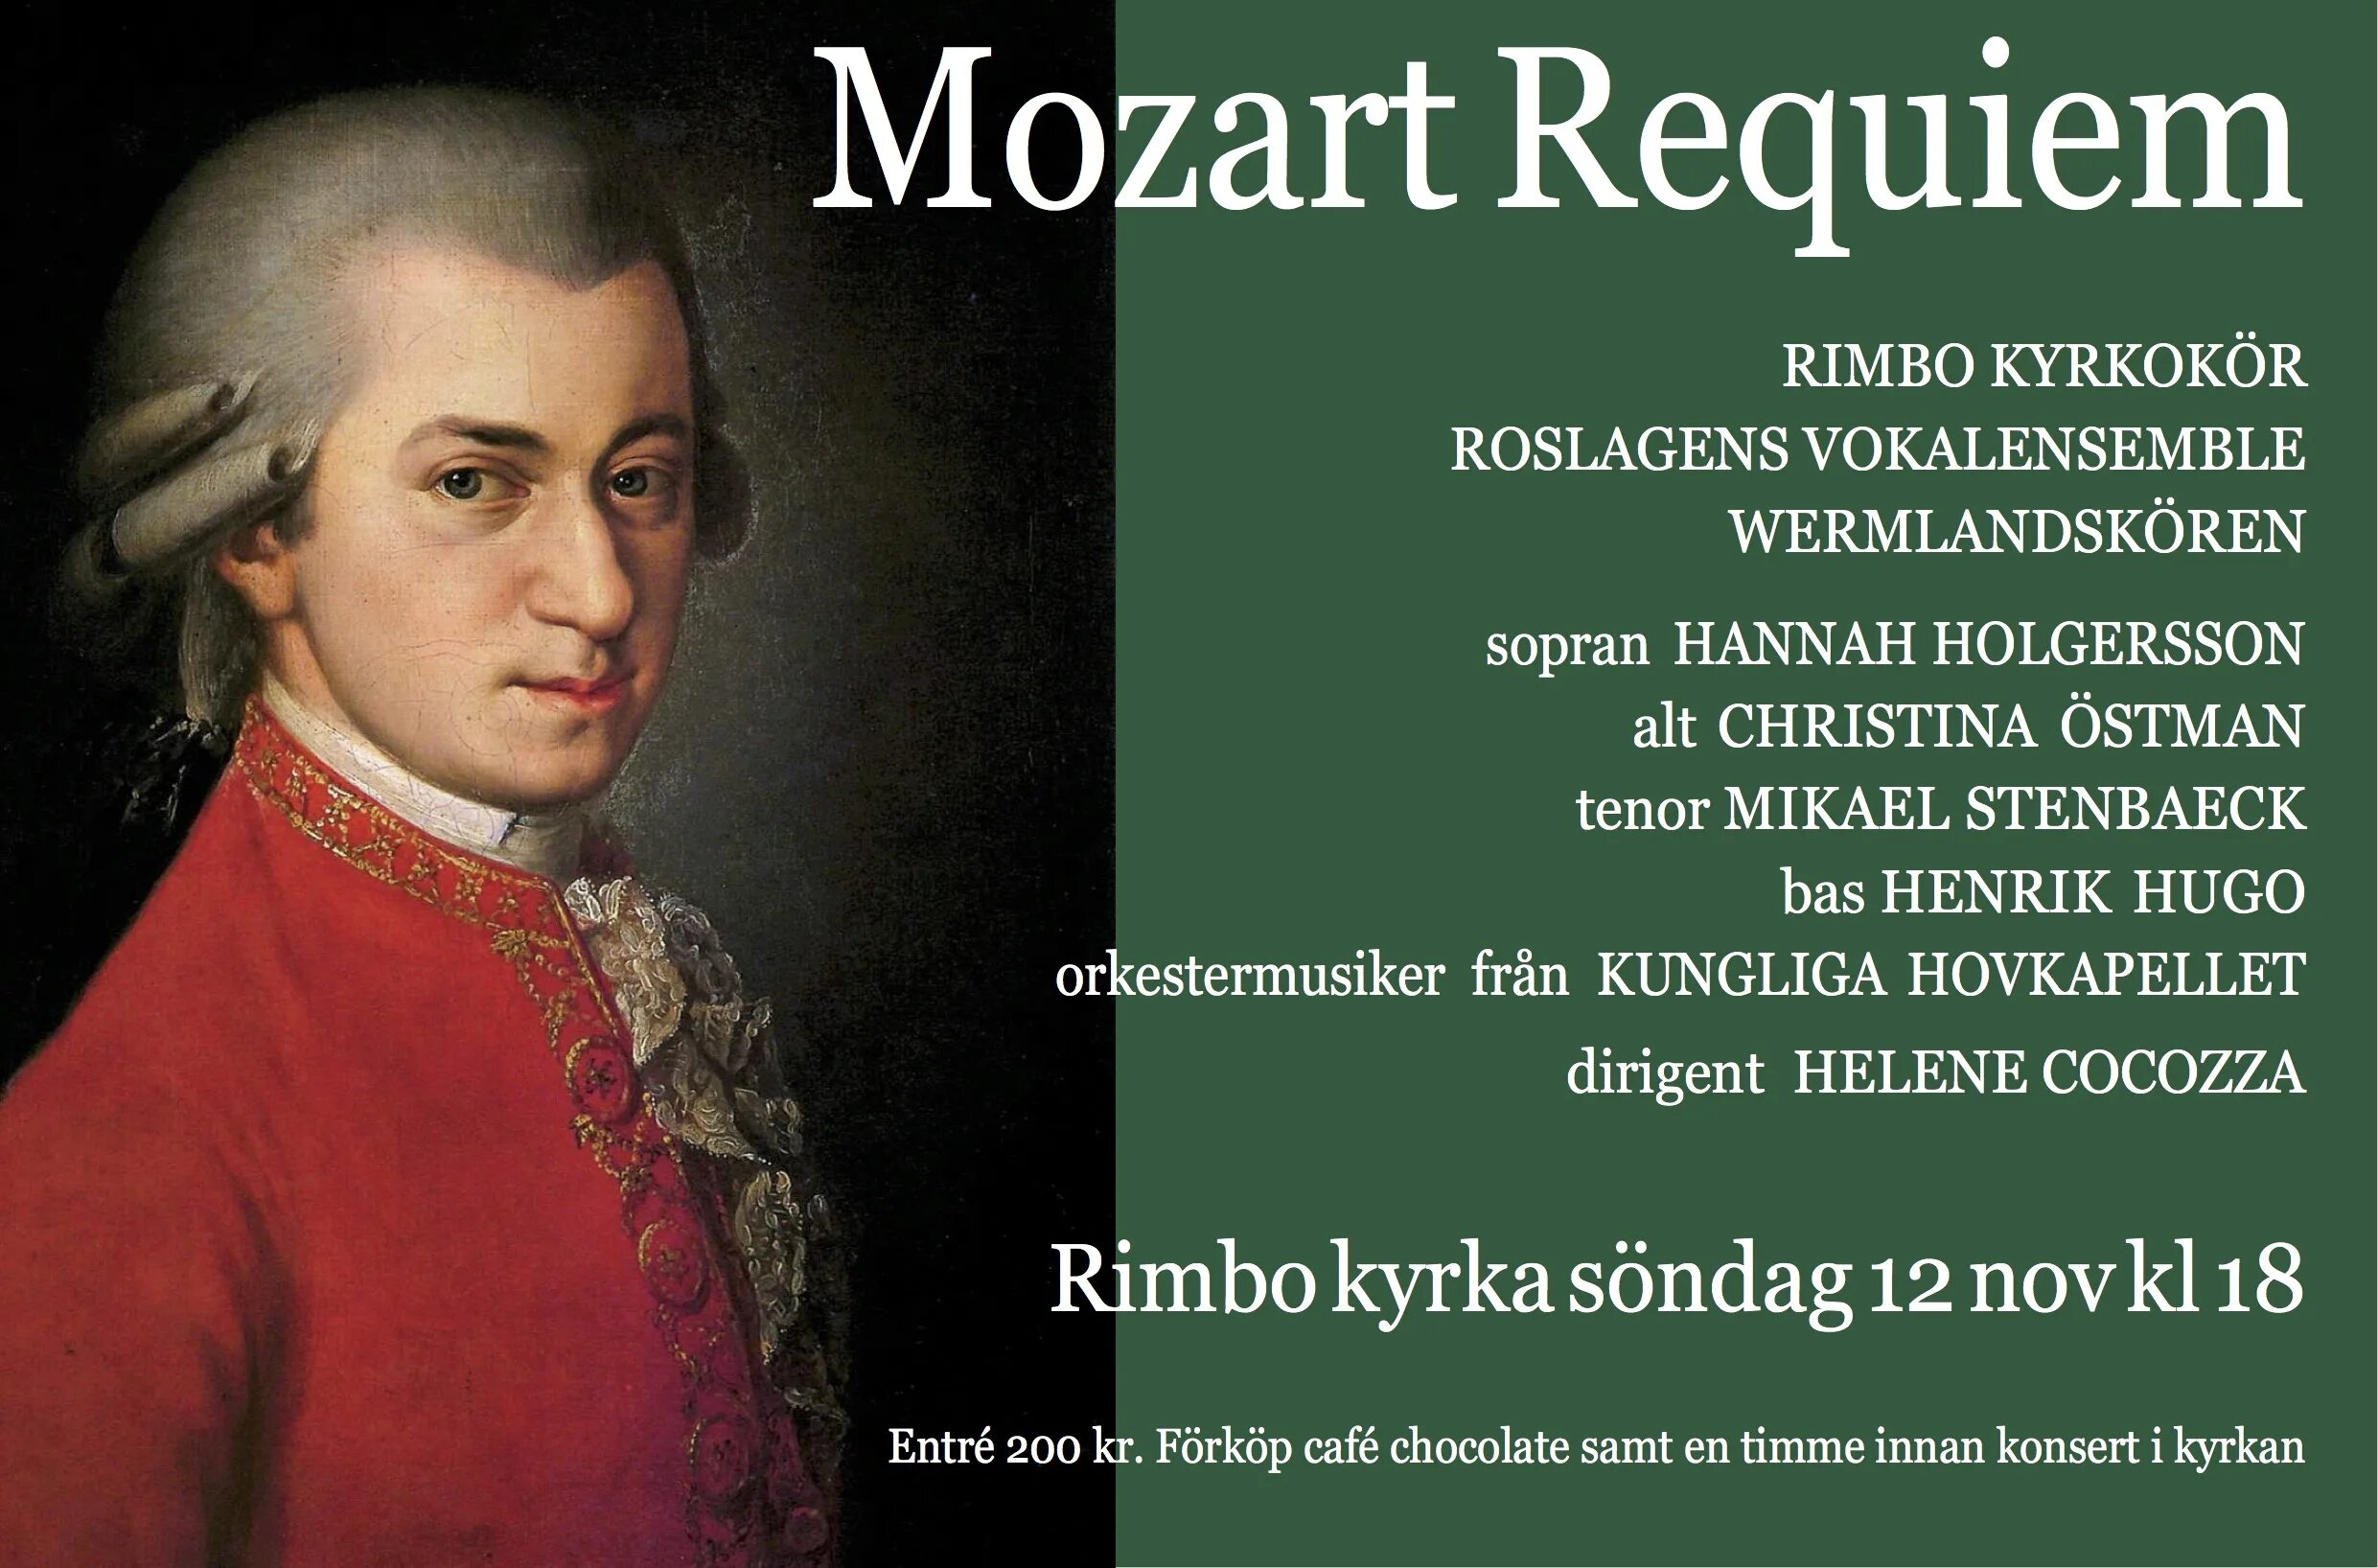 Моцарт. Реквием. Requiem Моцарт. Моцарт Реквием обложка. Реквием Моцарт рукопись.